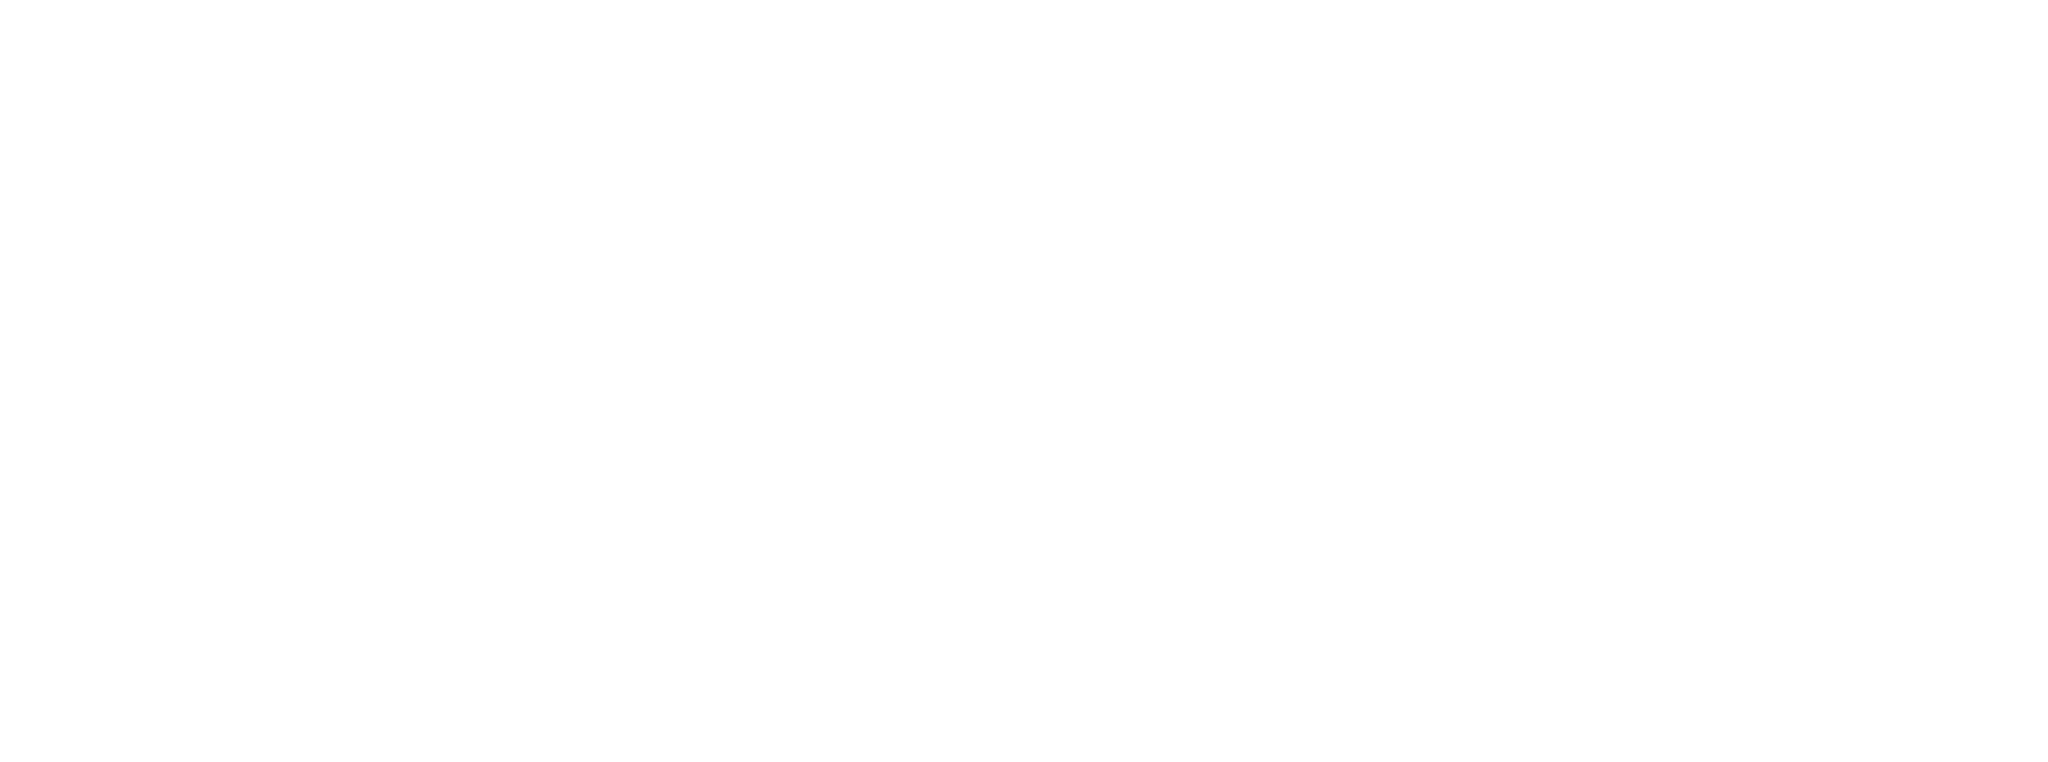 SAINT JAMES x LATER logo collaboration vêtements 100% 